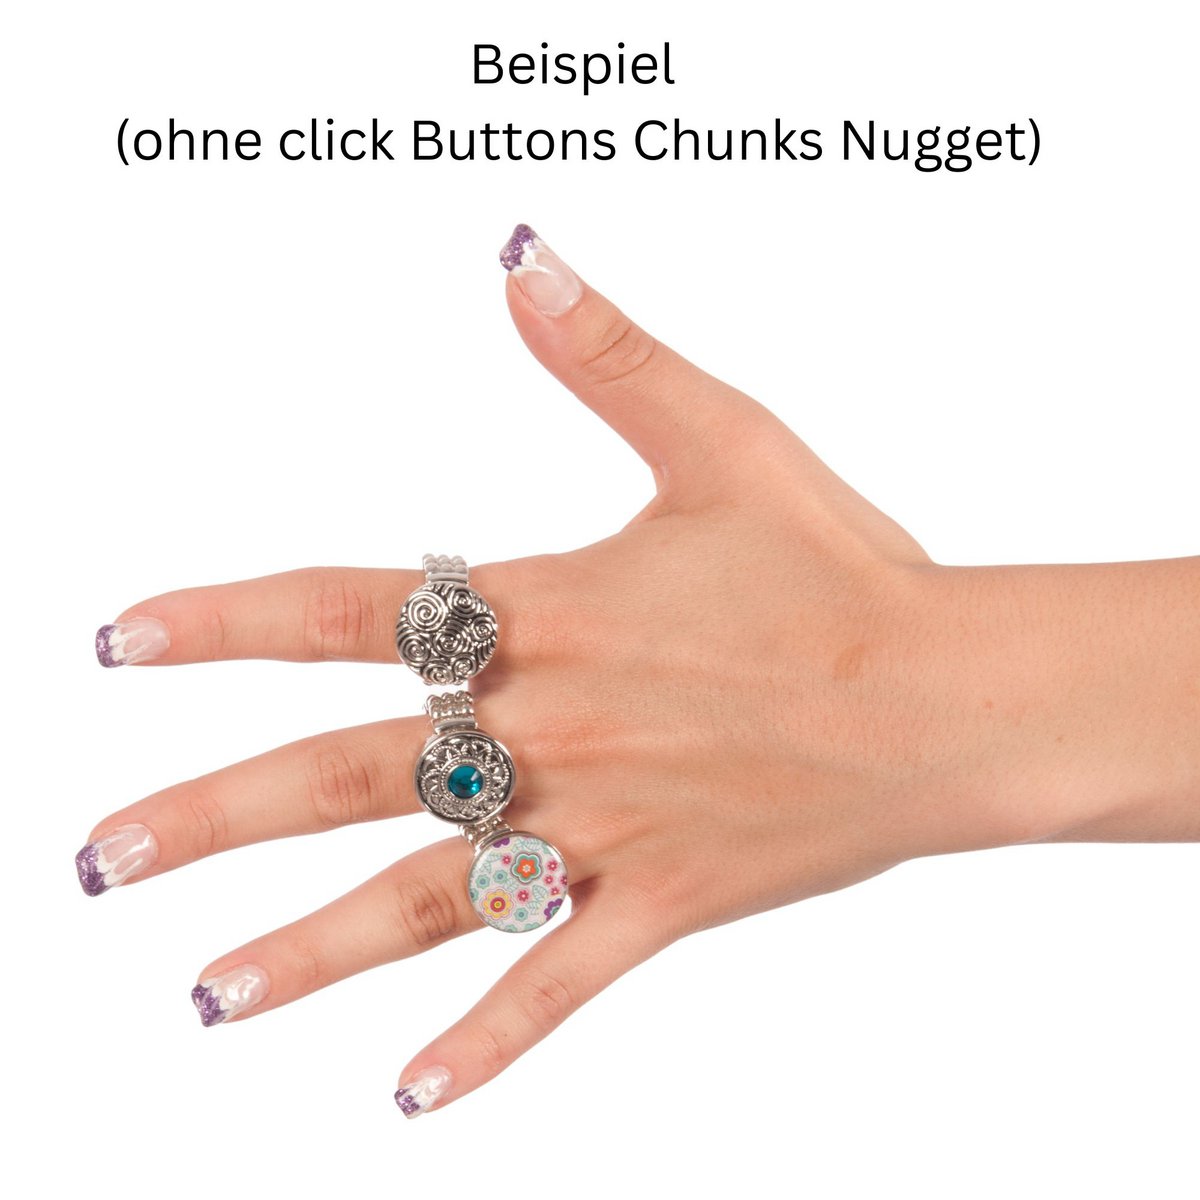 verklaren bewijs hoogte Set van 4 ringen voor chunky click-button sieraden Inkopen via de online  groothandel | Orderchamp